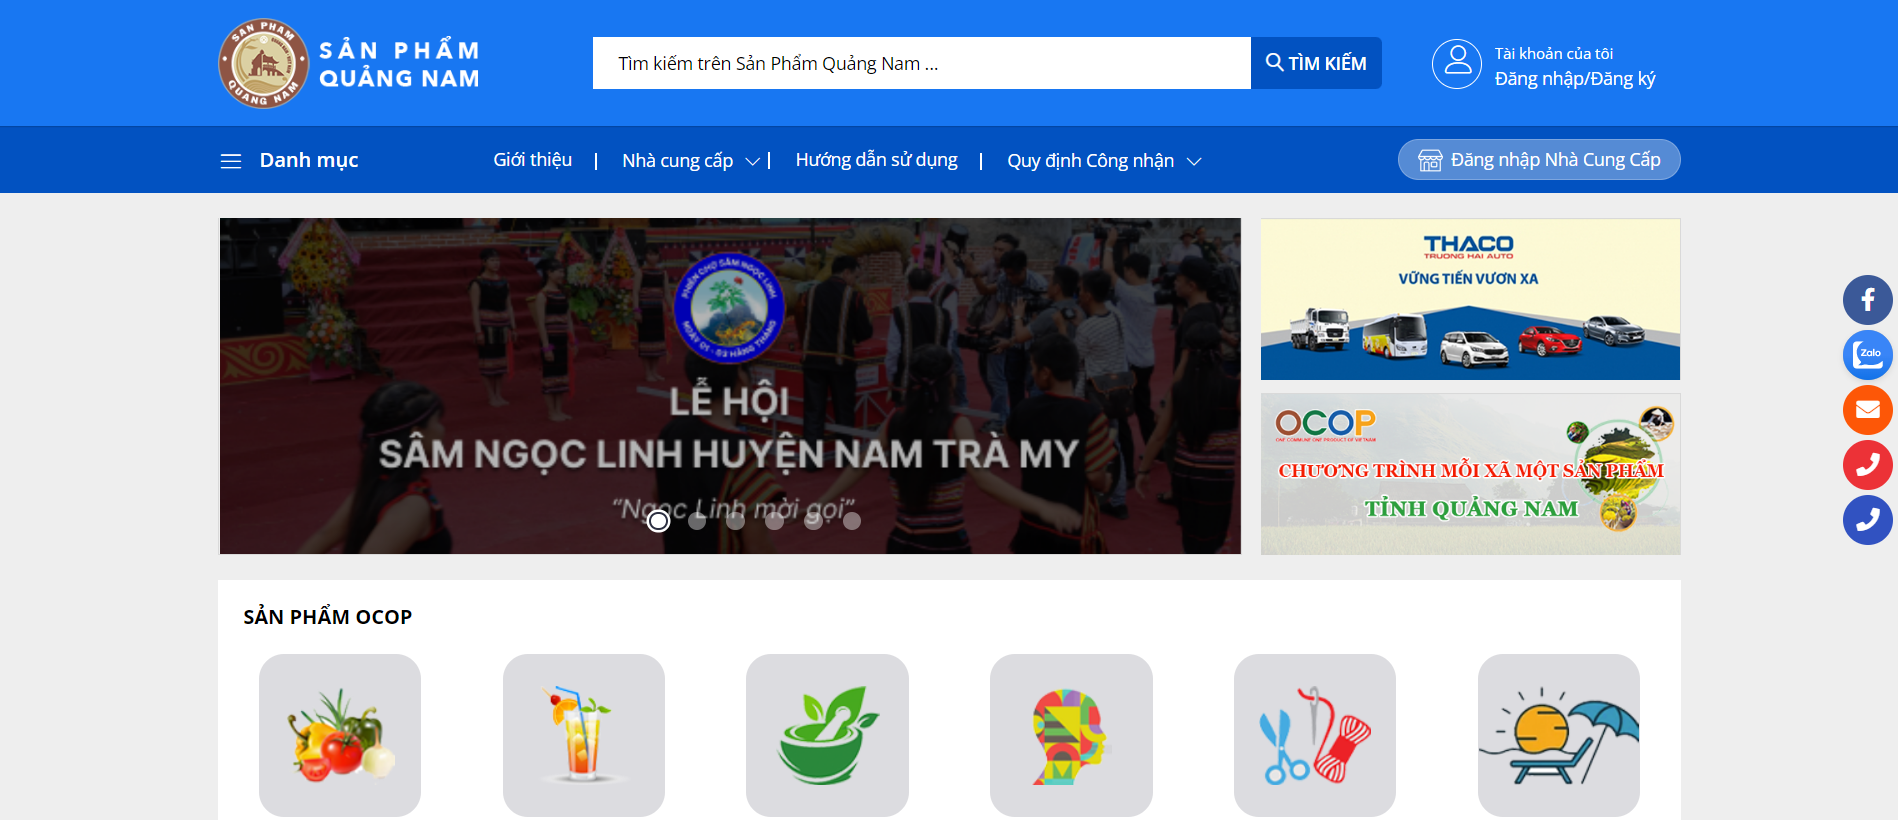 Cổng thông tin Sản phẩm Quảng Nam tại địa chỉ “sanpham.quangnam.gov.vn“.